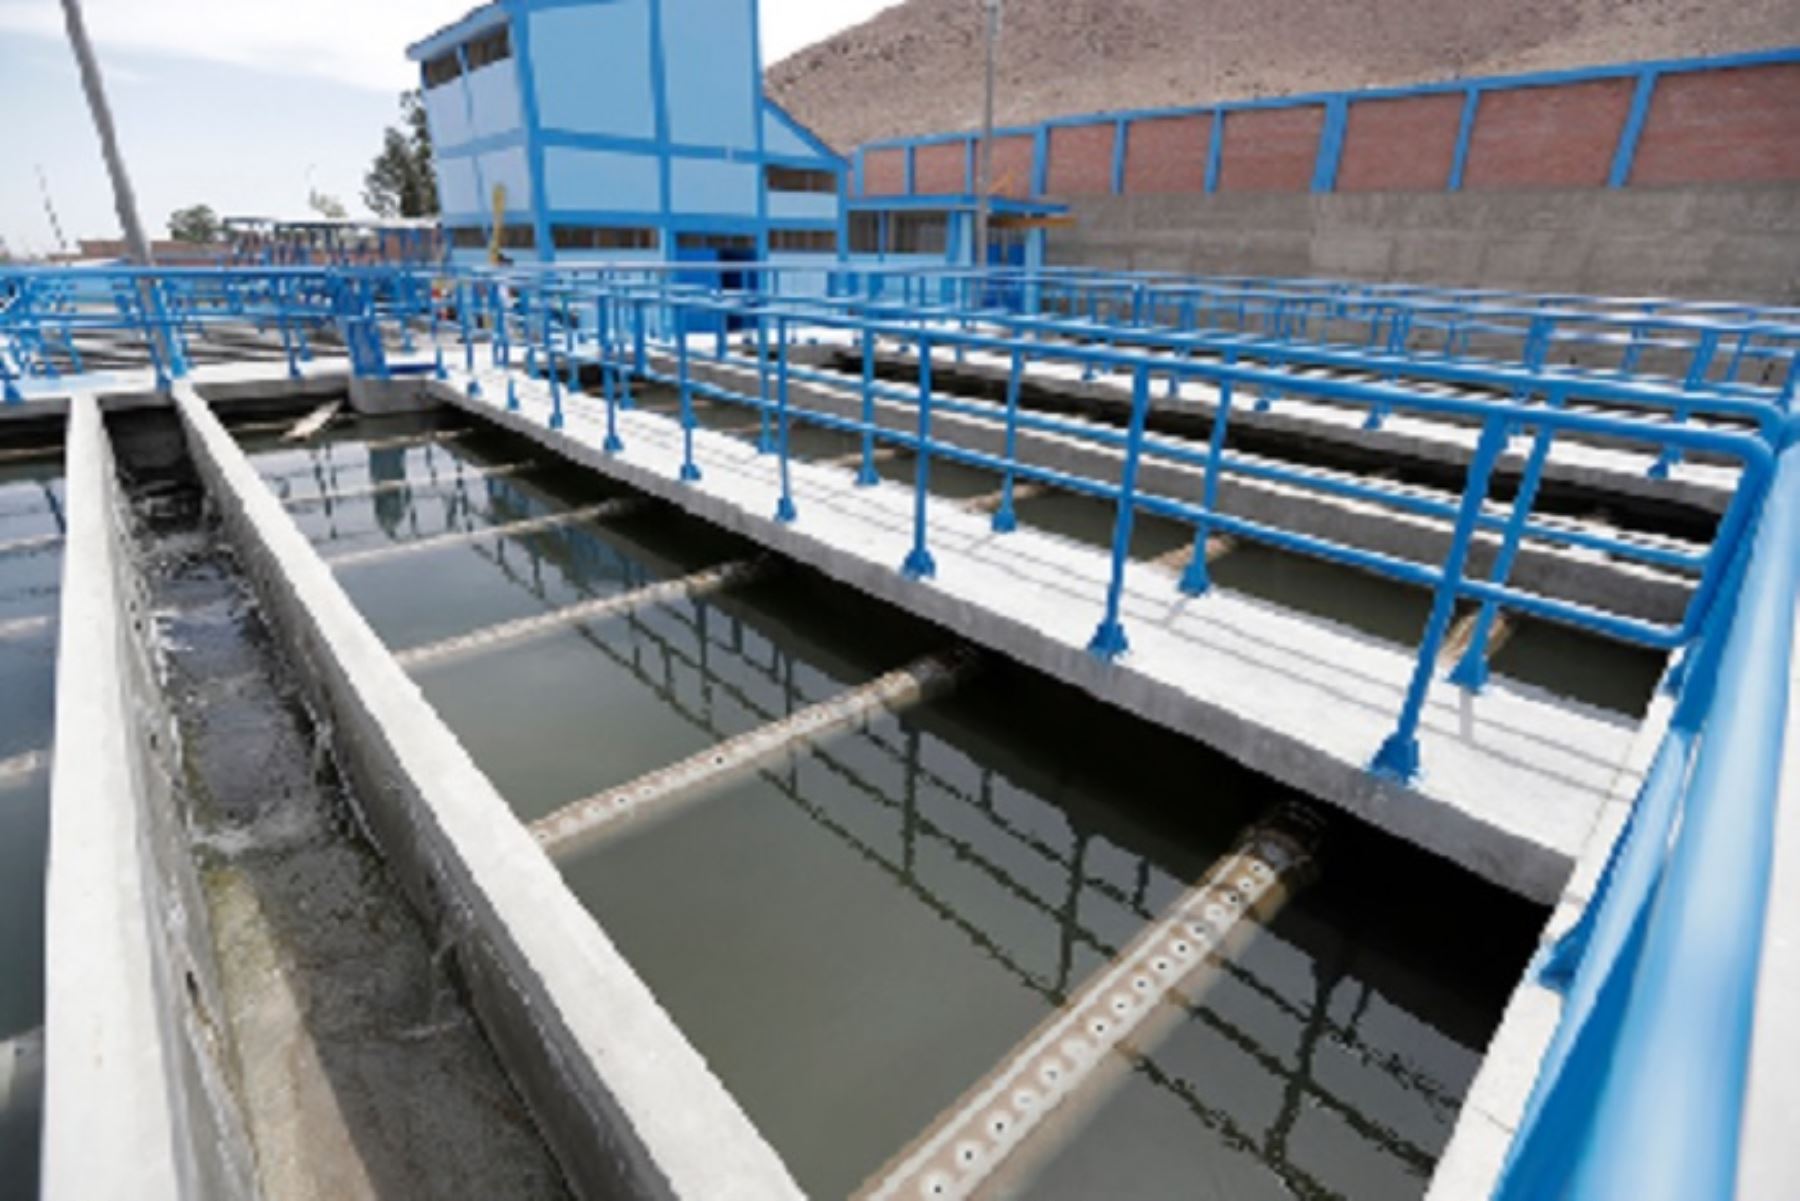 En noviembre de este año entrará en funcionamiento la nueva Planta de Tratamiento de Agua Potable (PTAP) del distrito de La Joya, en la región Arequipa, que demandará una inversión de más de S/83 millones, anuncio el Ministerio de Vivienda, Construcción y Saneamiento.